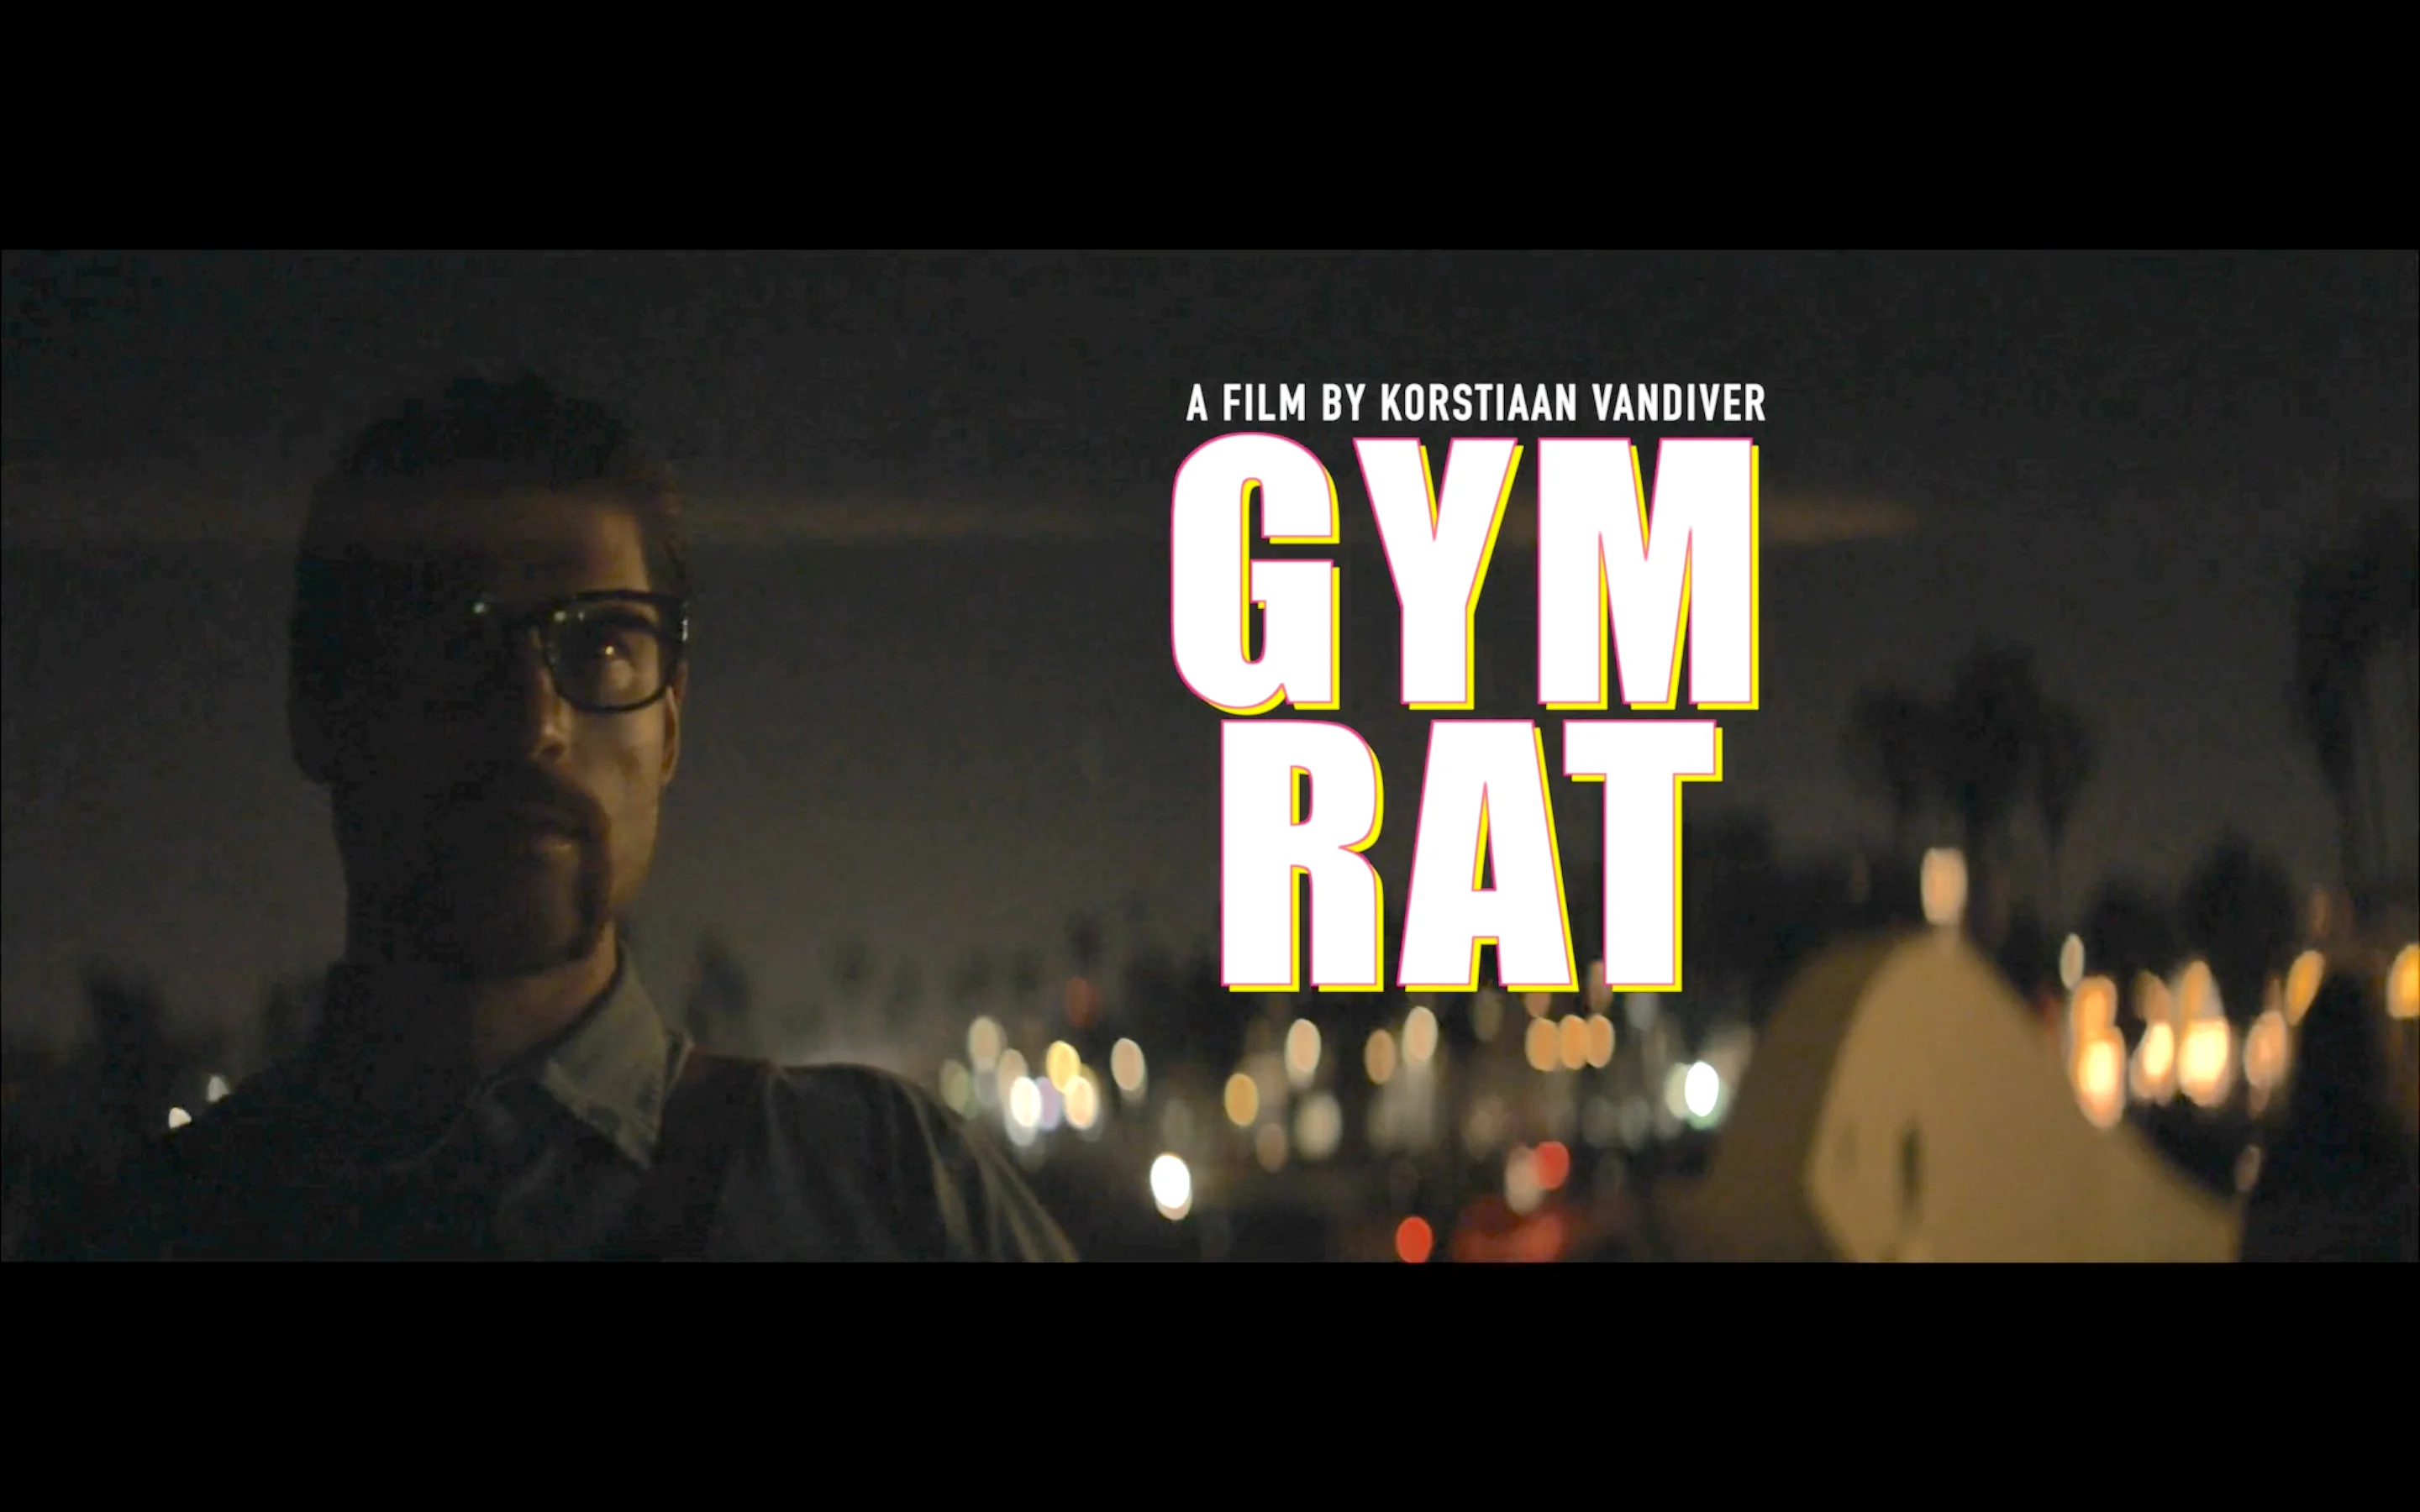 Gym Rat | Sticker